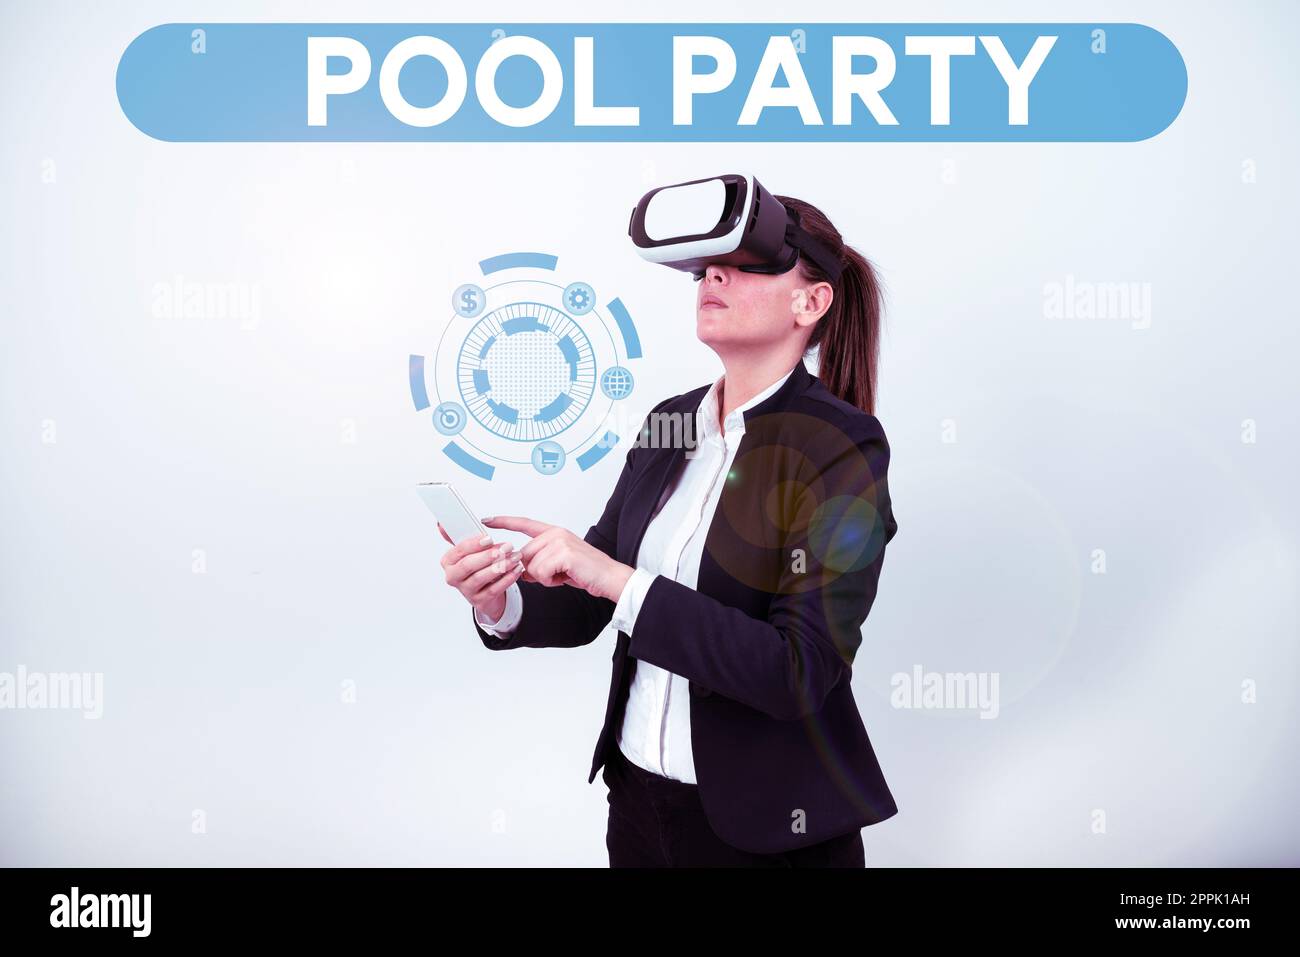 Groupe d'affichage conceptuel. Internet concept célébration qui inclut des activités dans une piscine Banque D'Images